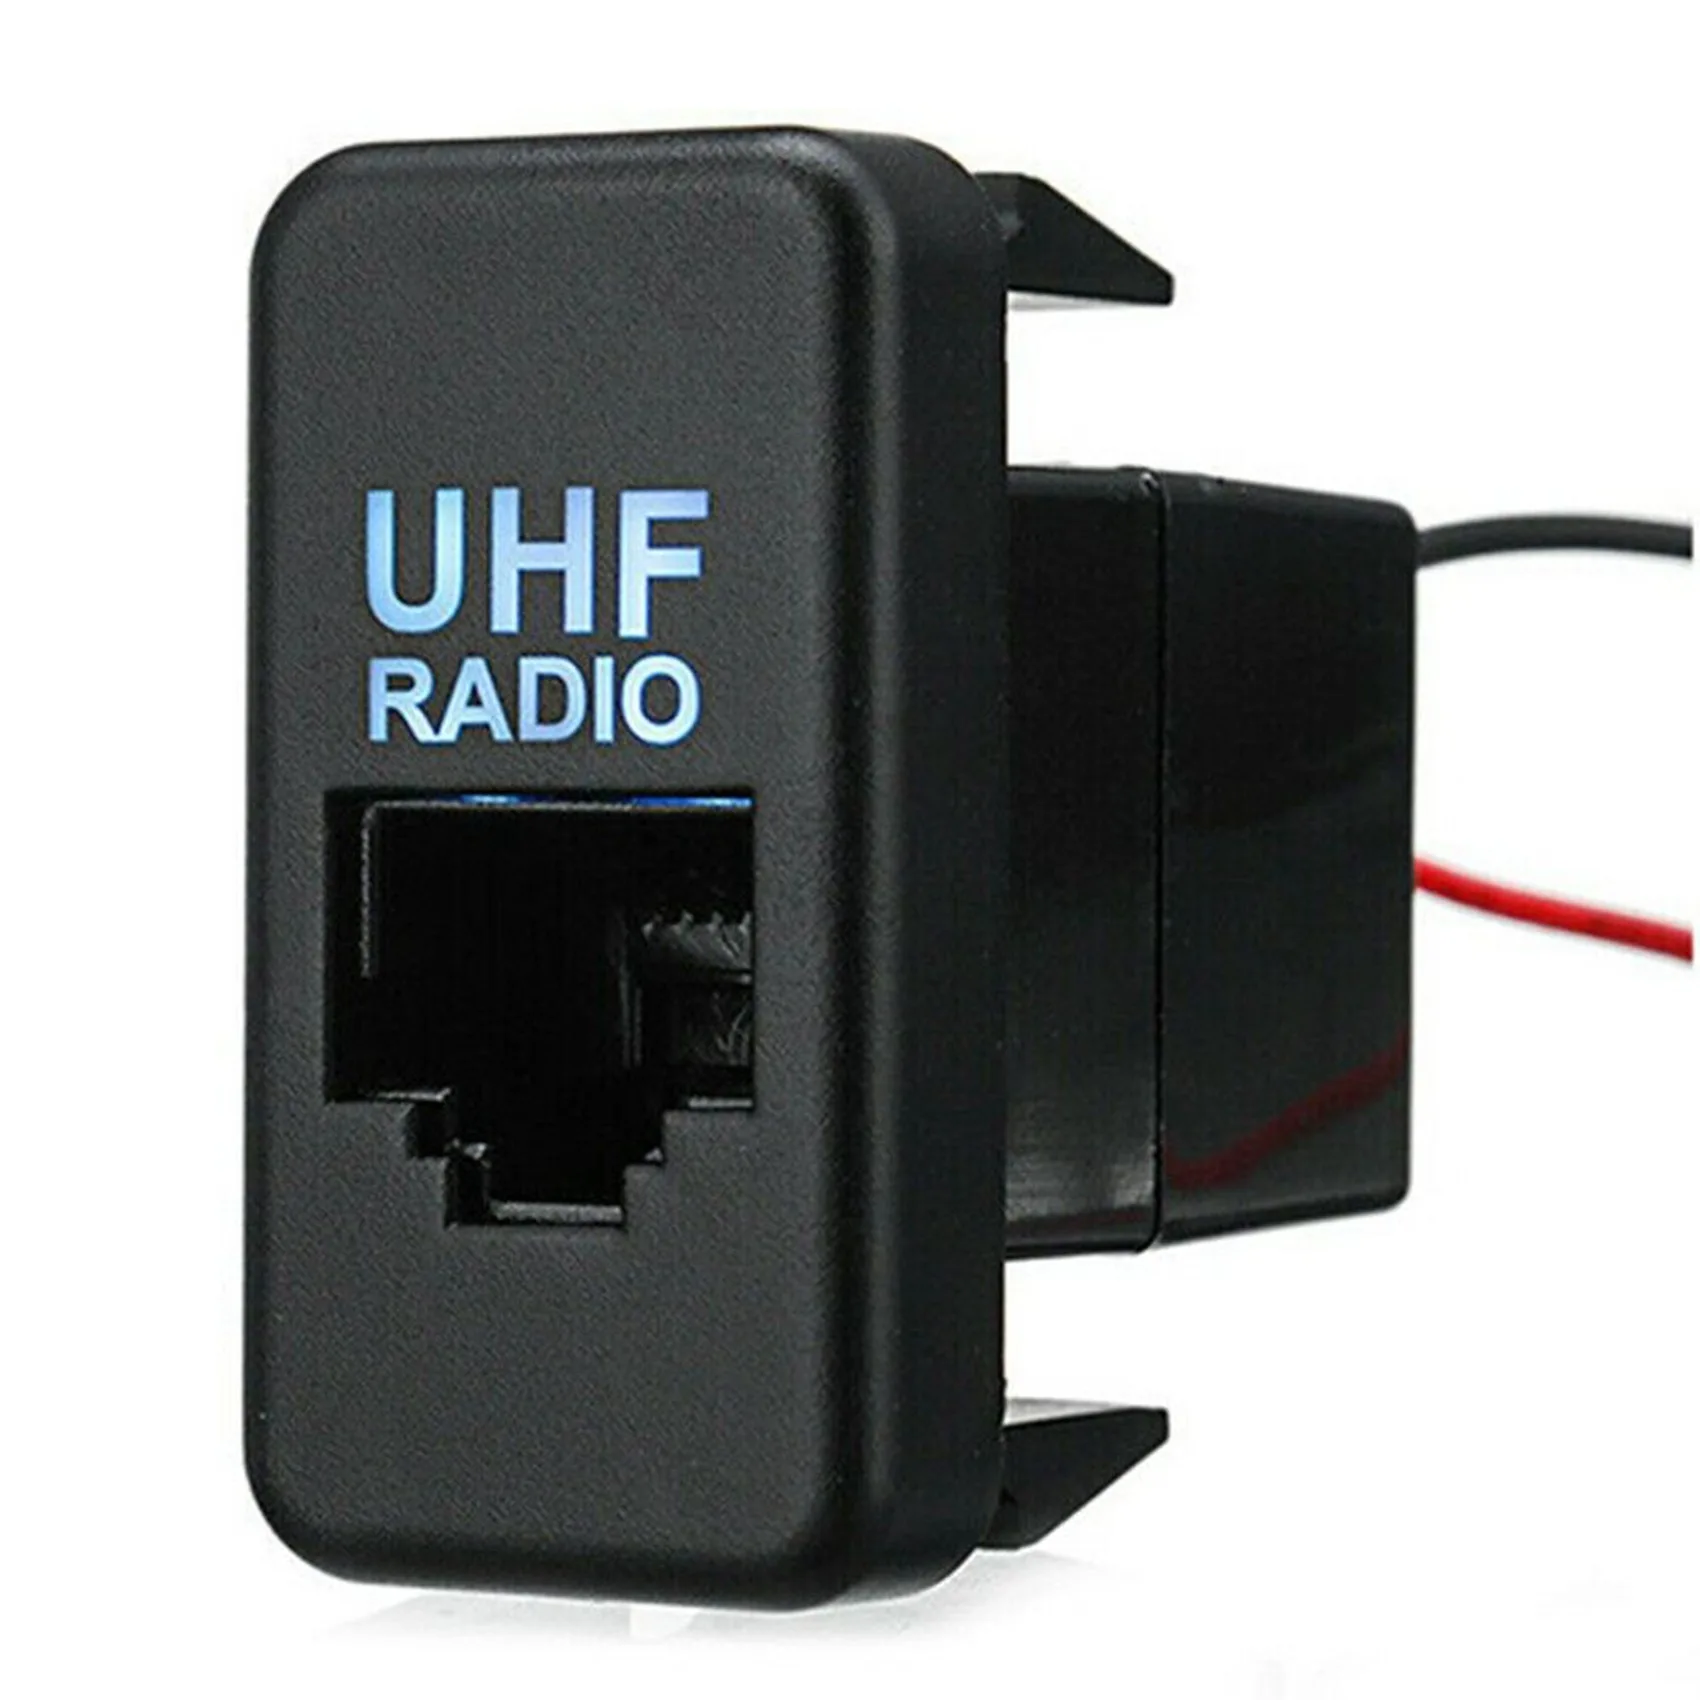 

RJ45 Dash UHF Radio Switch Panel Socket with Blue LED for Toyota Hilux Landcruiser